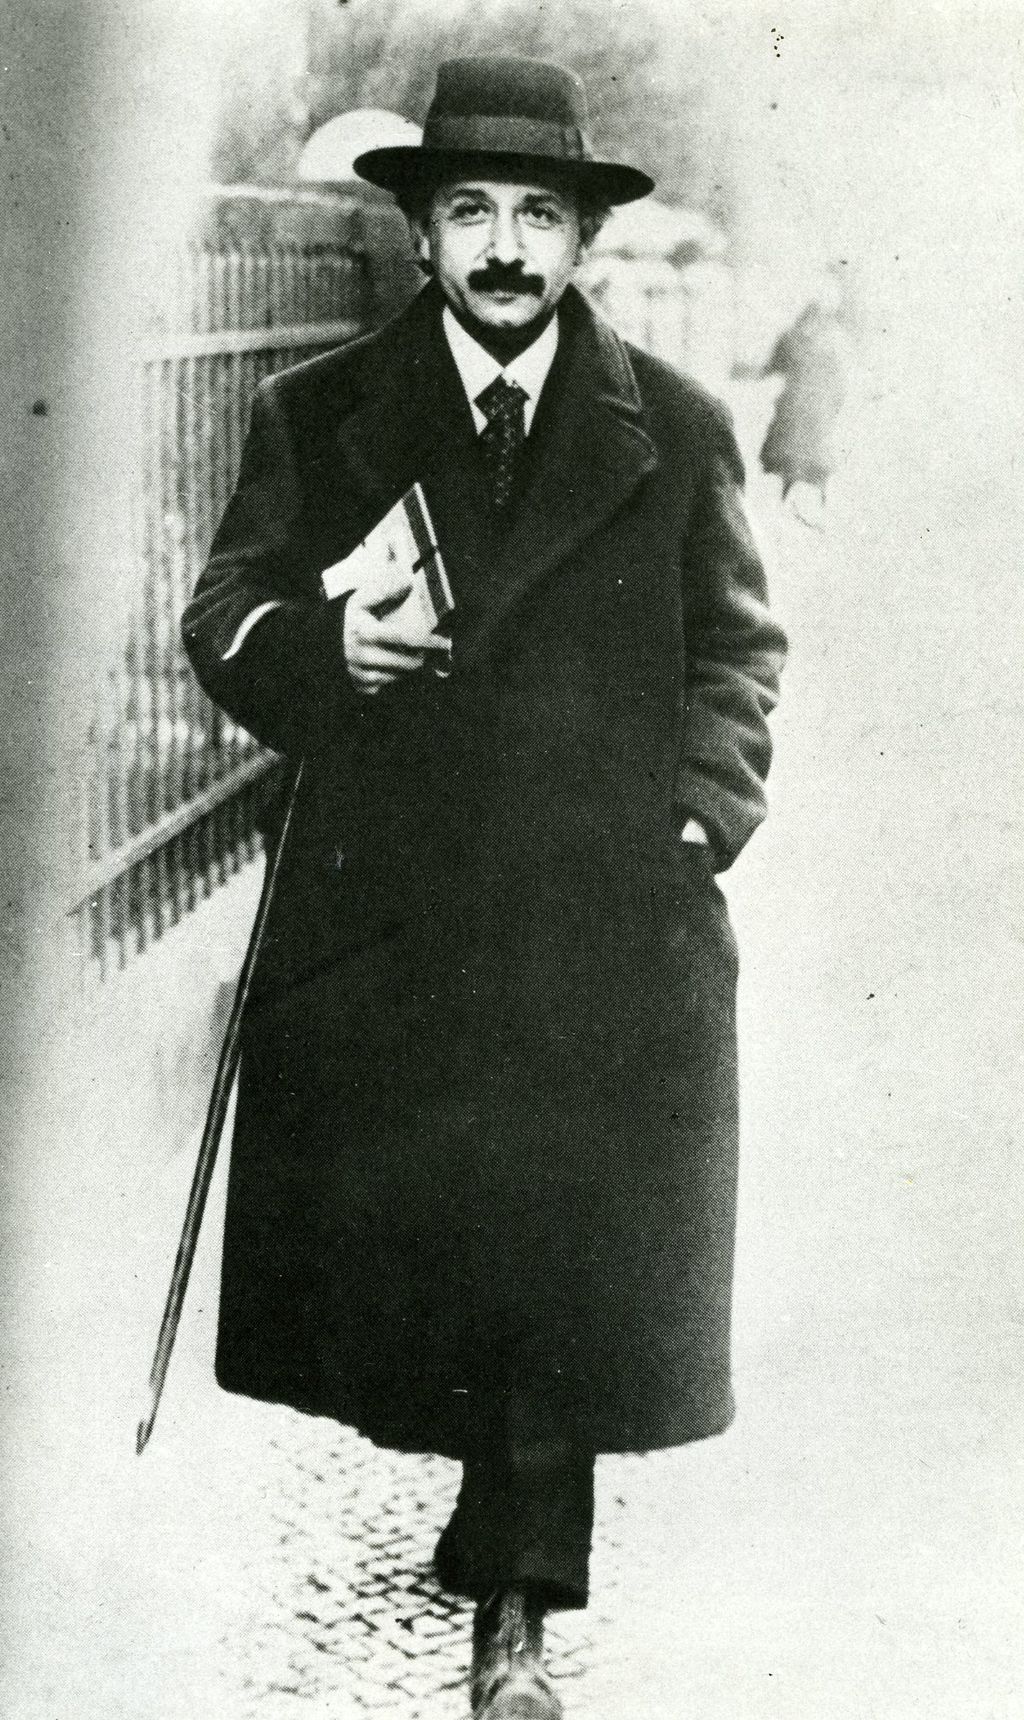 Foto: Albert Einstein auf dem Weg zur Vorlesung, 1920